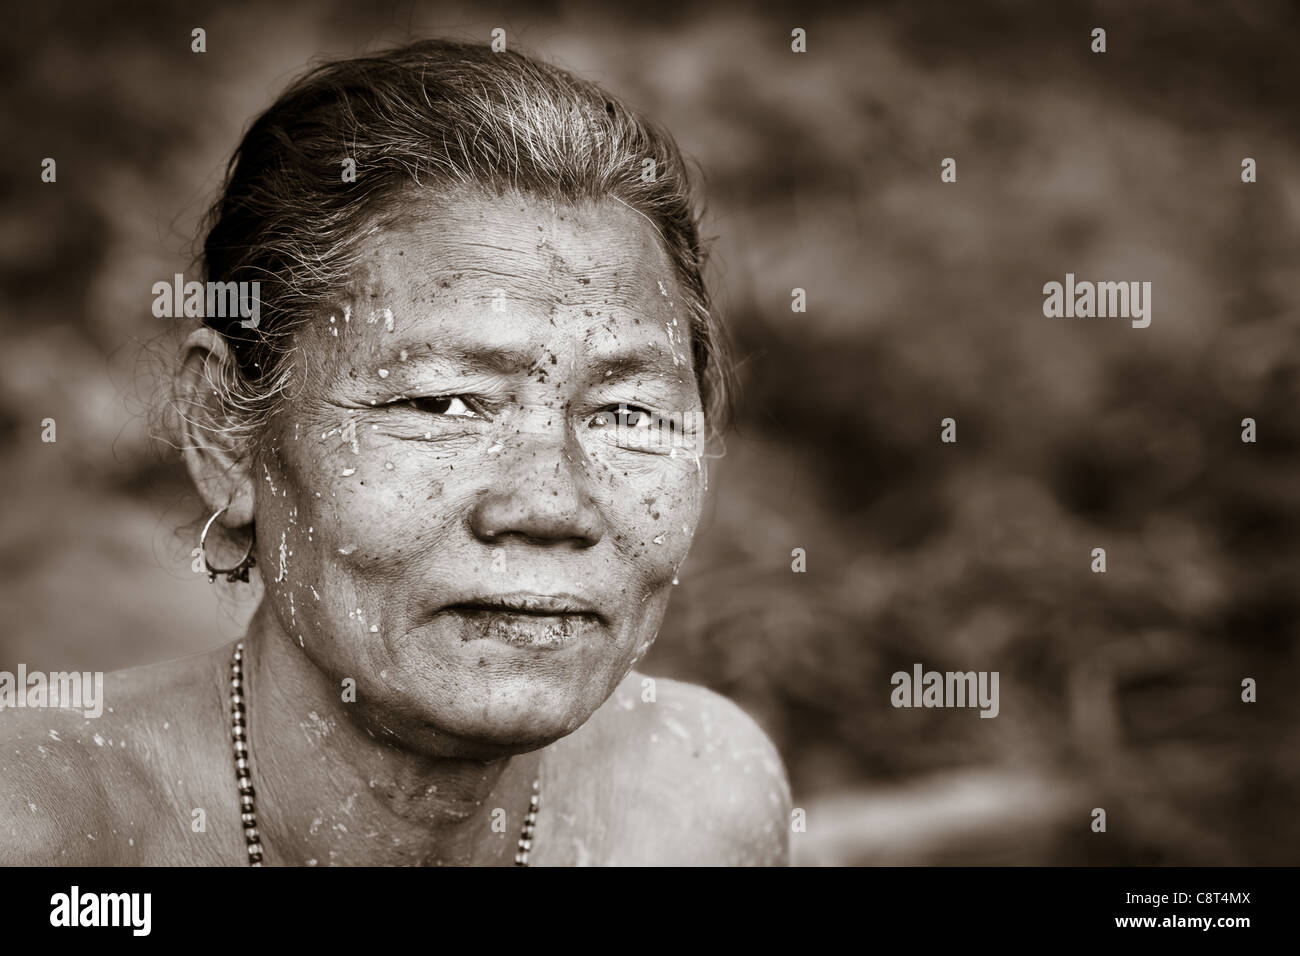 Portrait d'une femme âgée de la tribu de l'Île Majuli Mishing dans le Brahmapoutre, Assam, Inde Banque D'Images